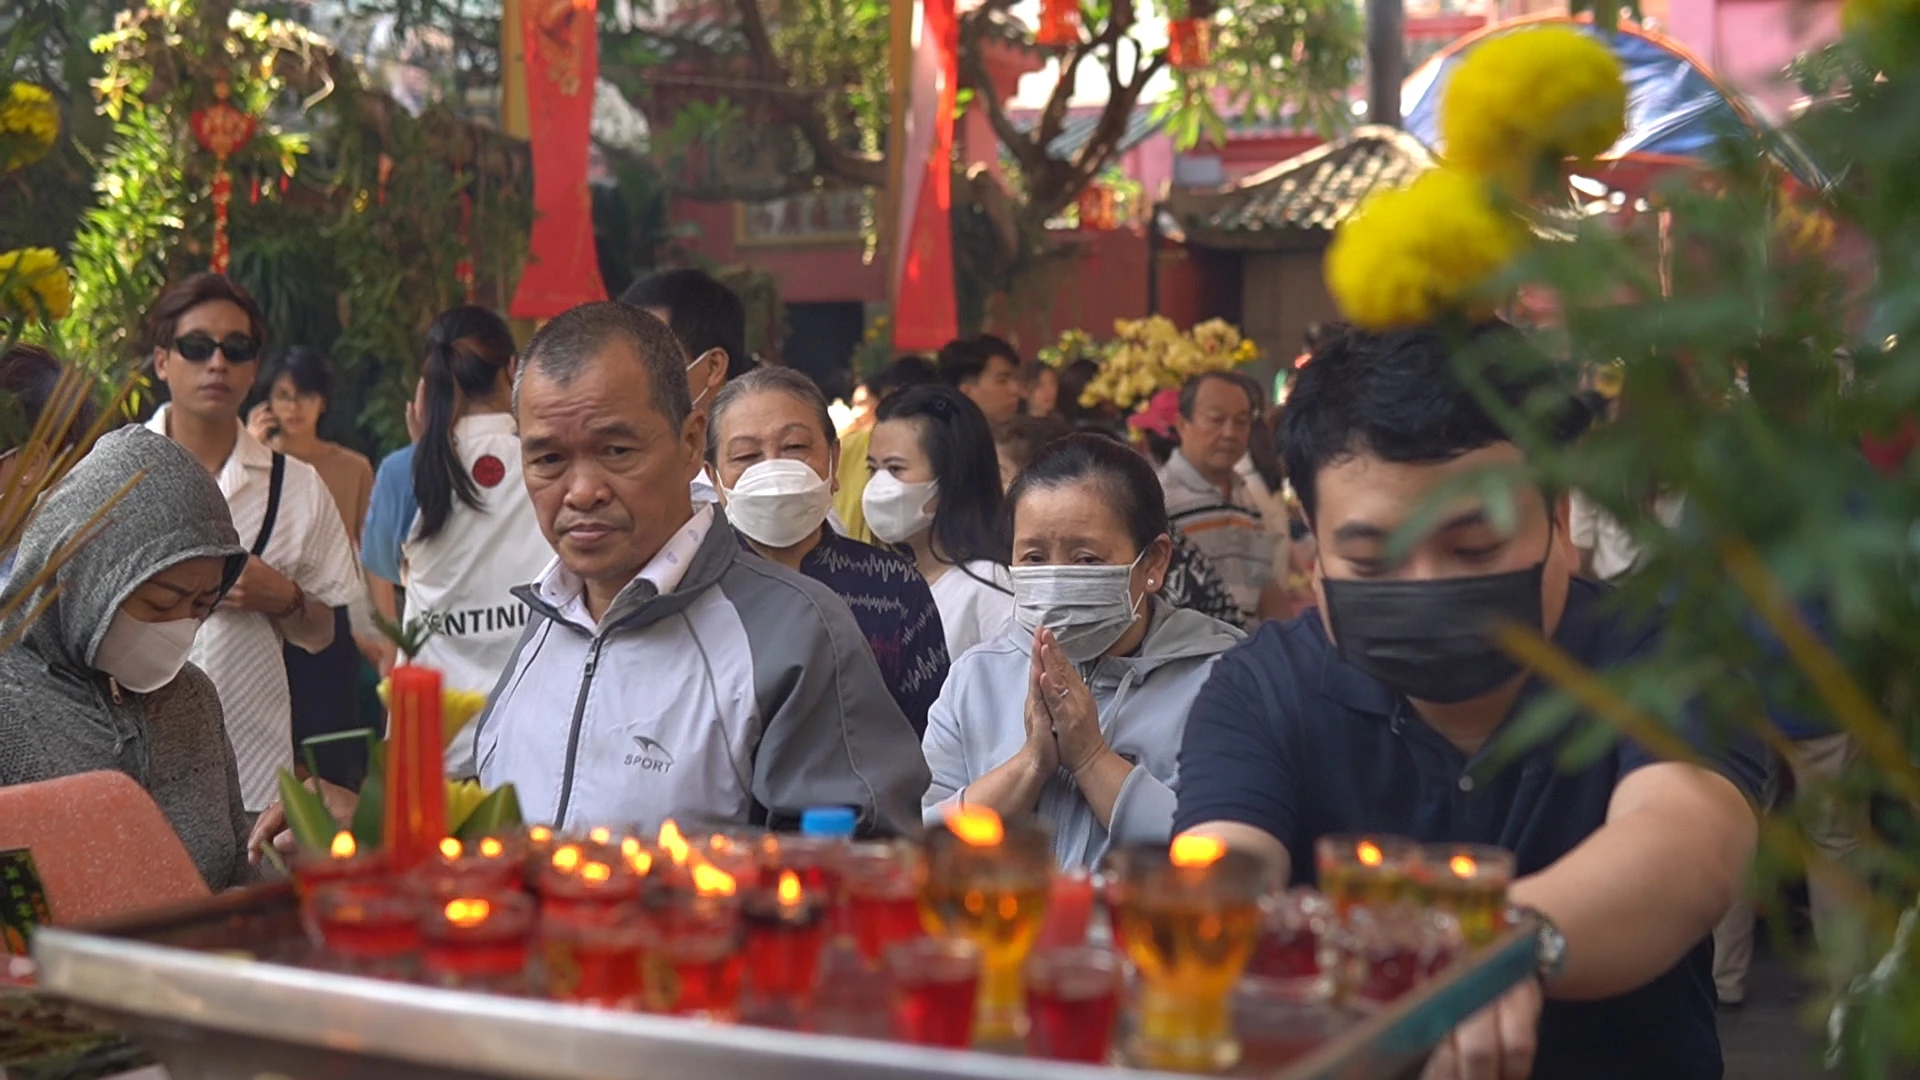 Hàng ngàn người đội nắng đợi đến giữa trưa để vào chùa cầu an ngày vía Ngọc Hoàng